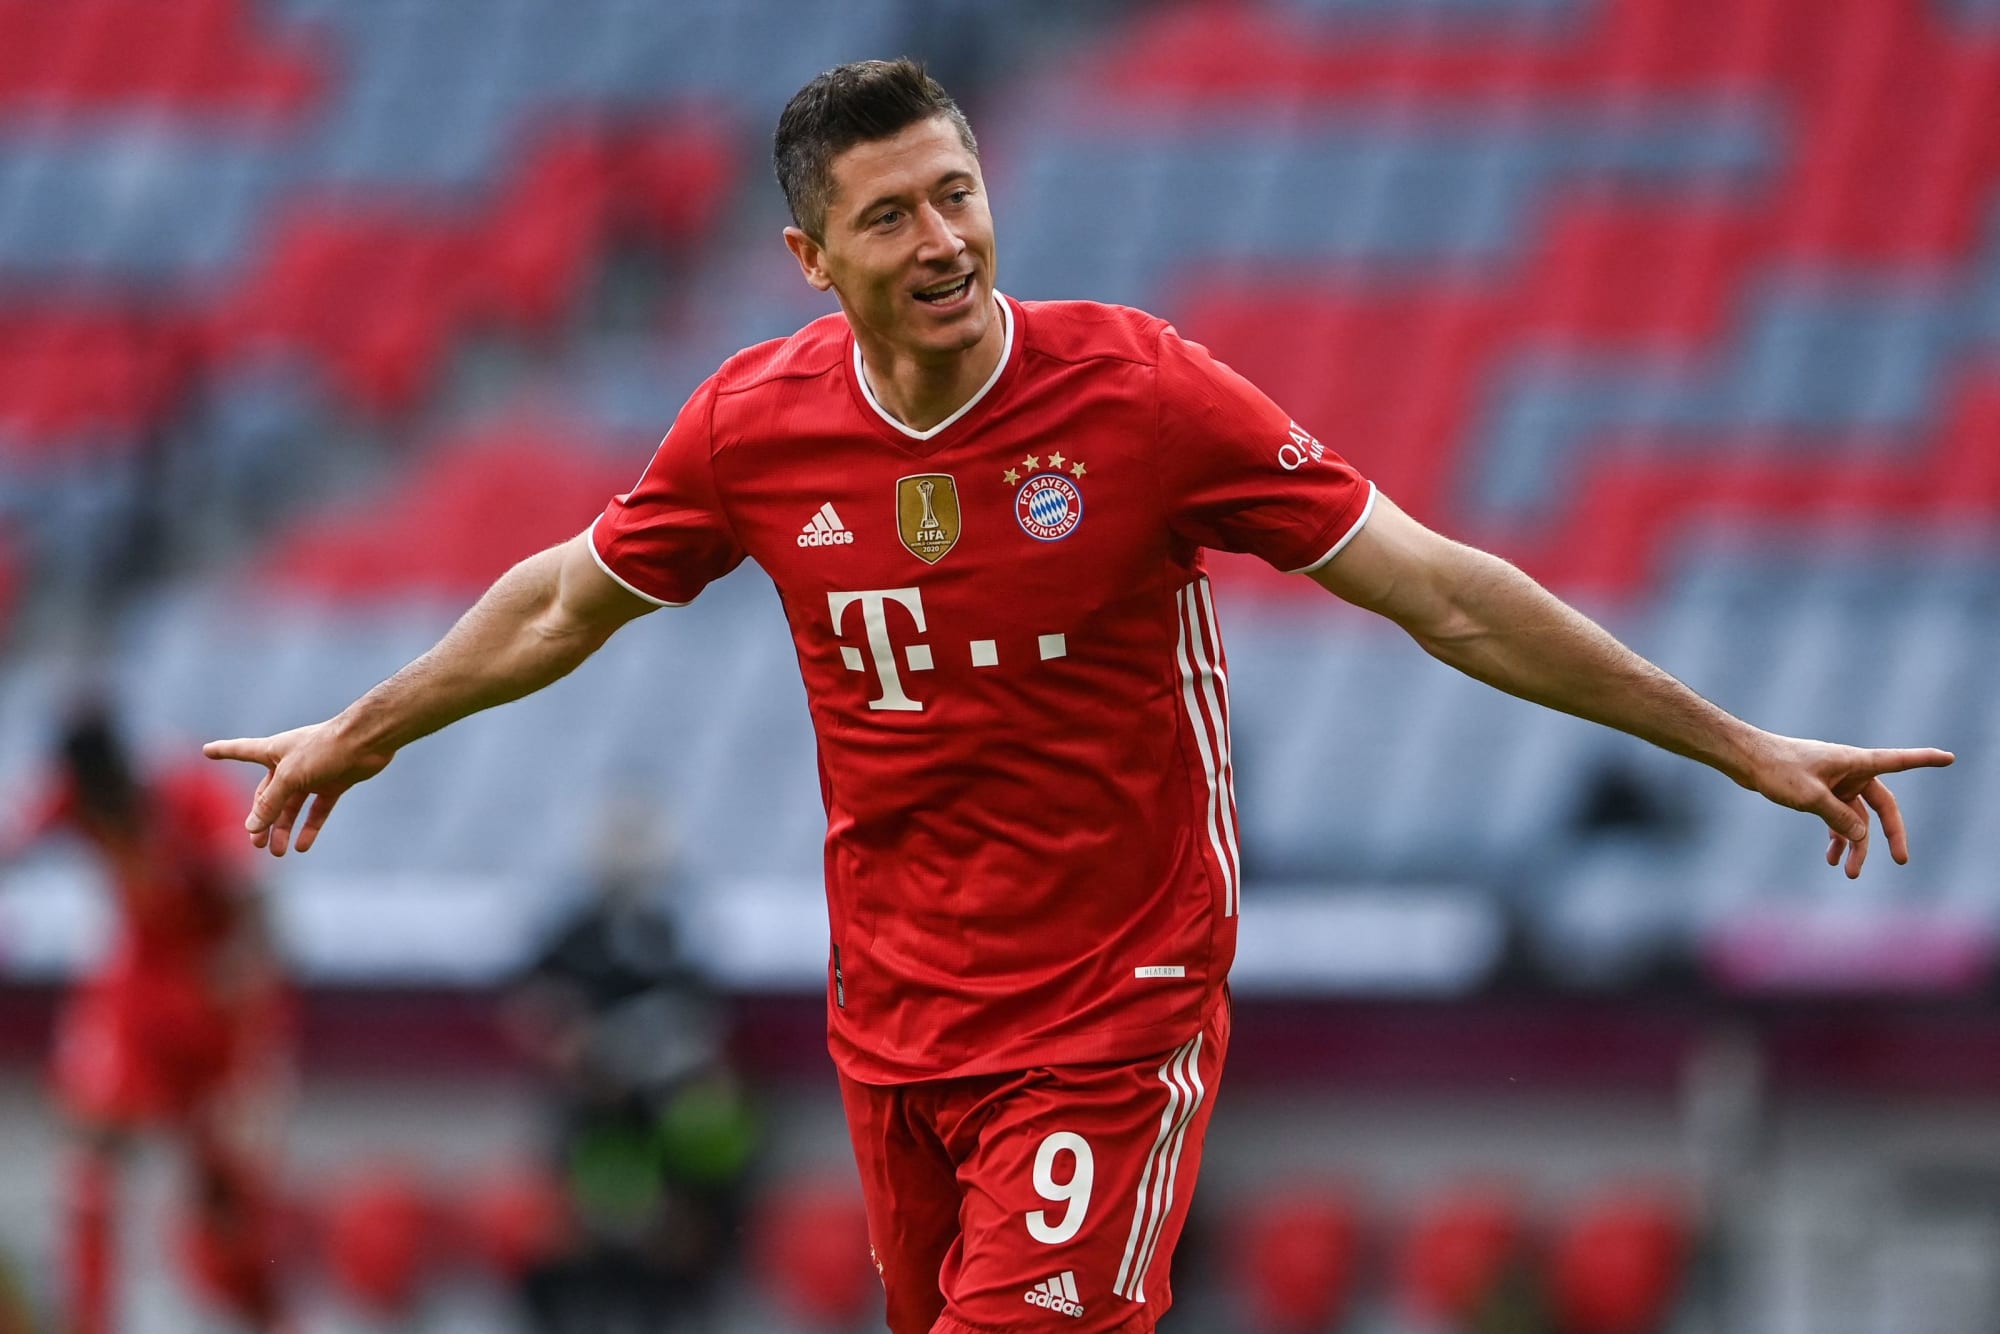 Bayern Munich: Robert Lewandowski wins European Golden Boot